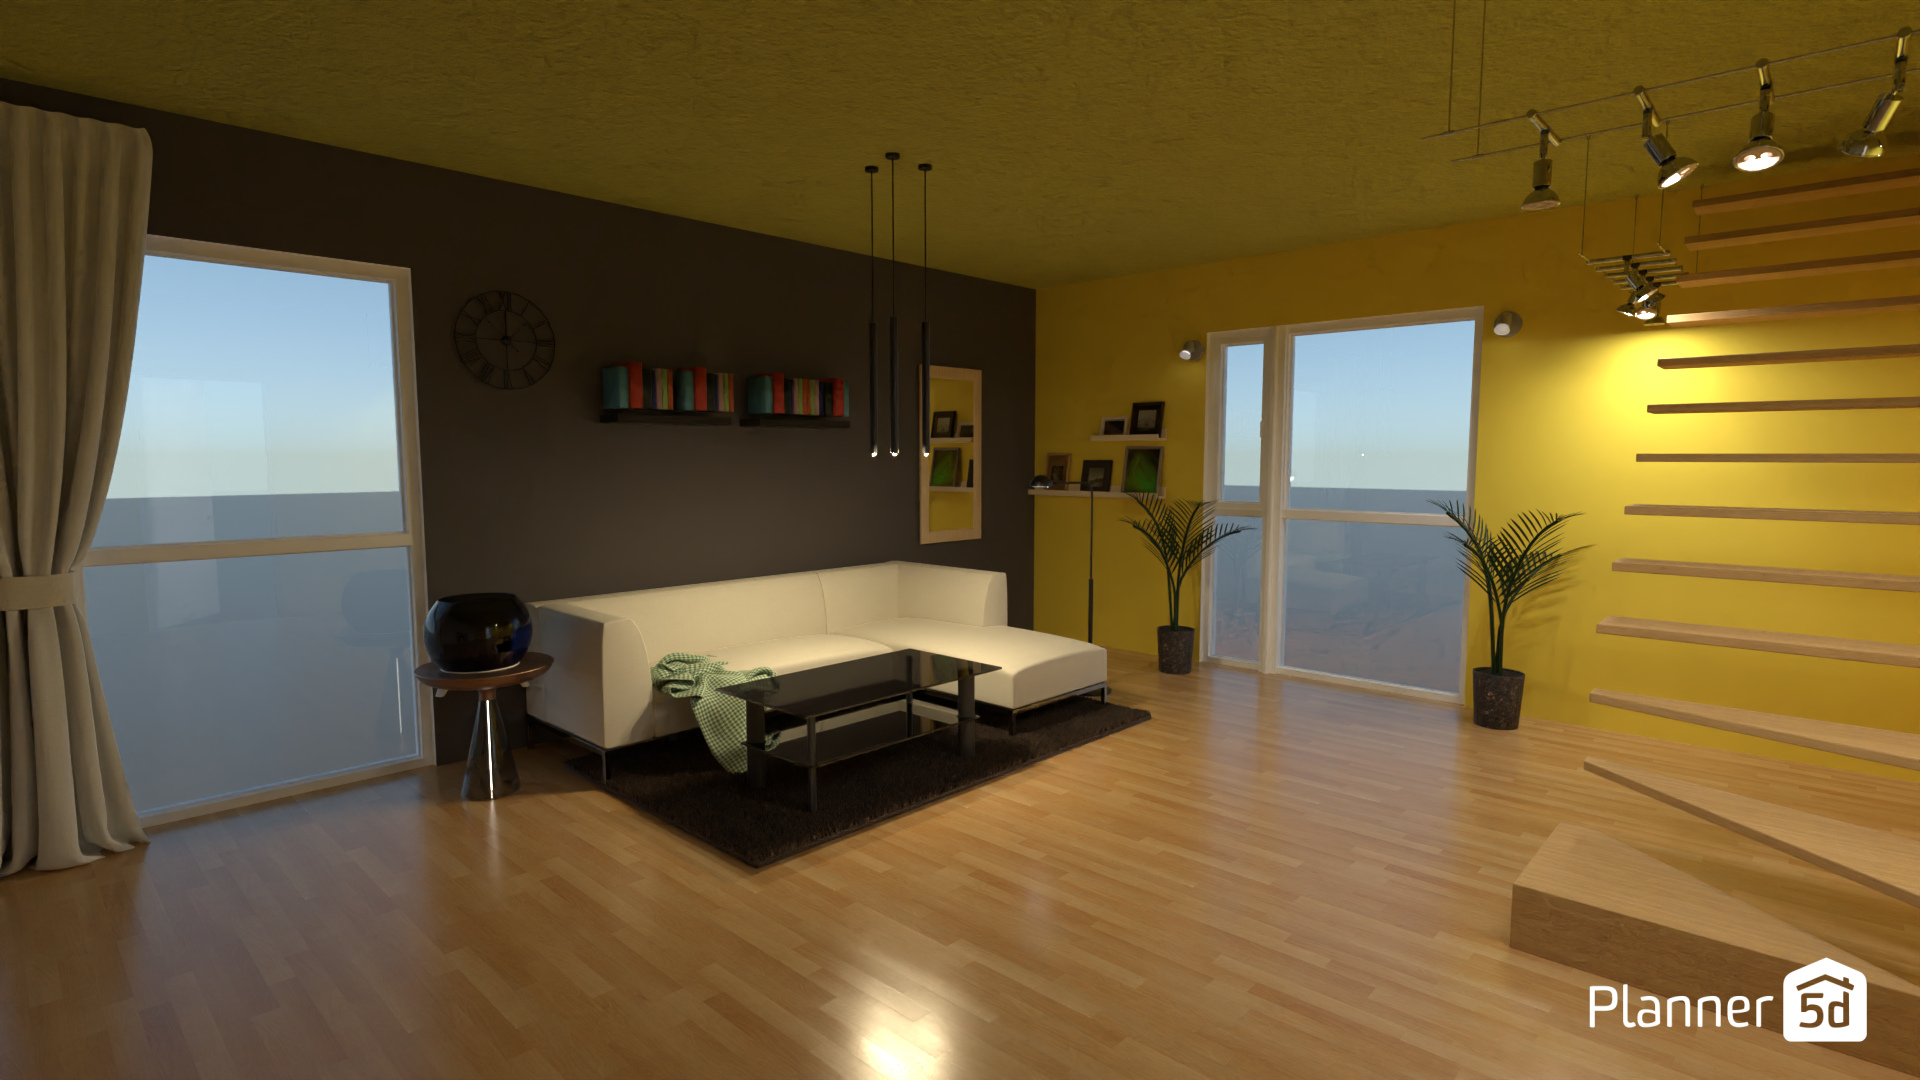 Living Room 18772840 by Diya image